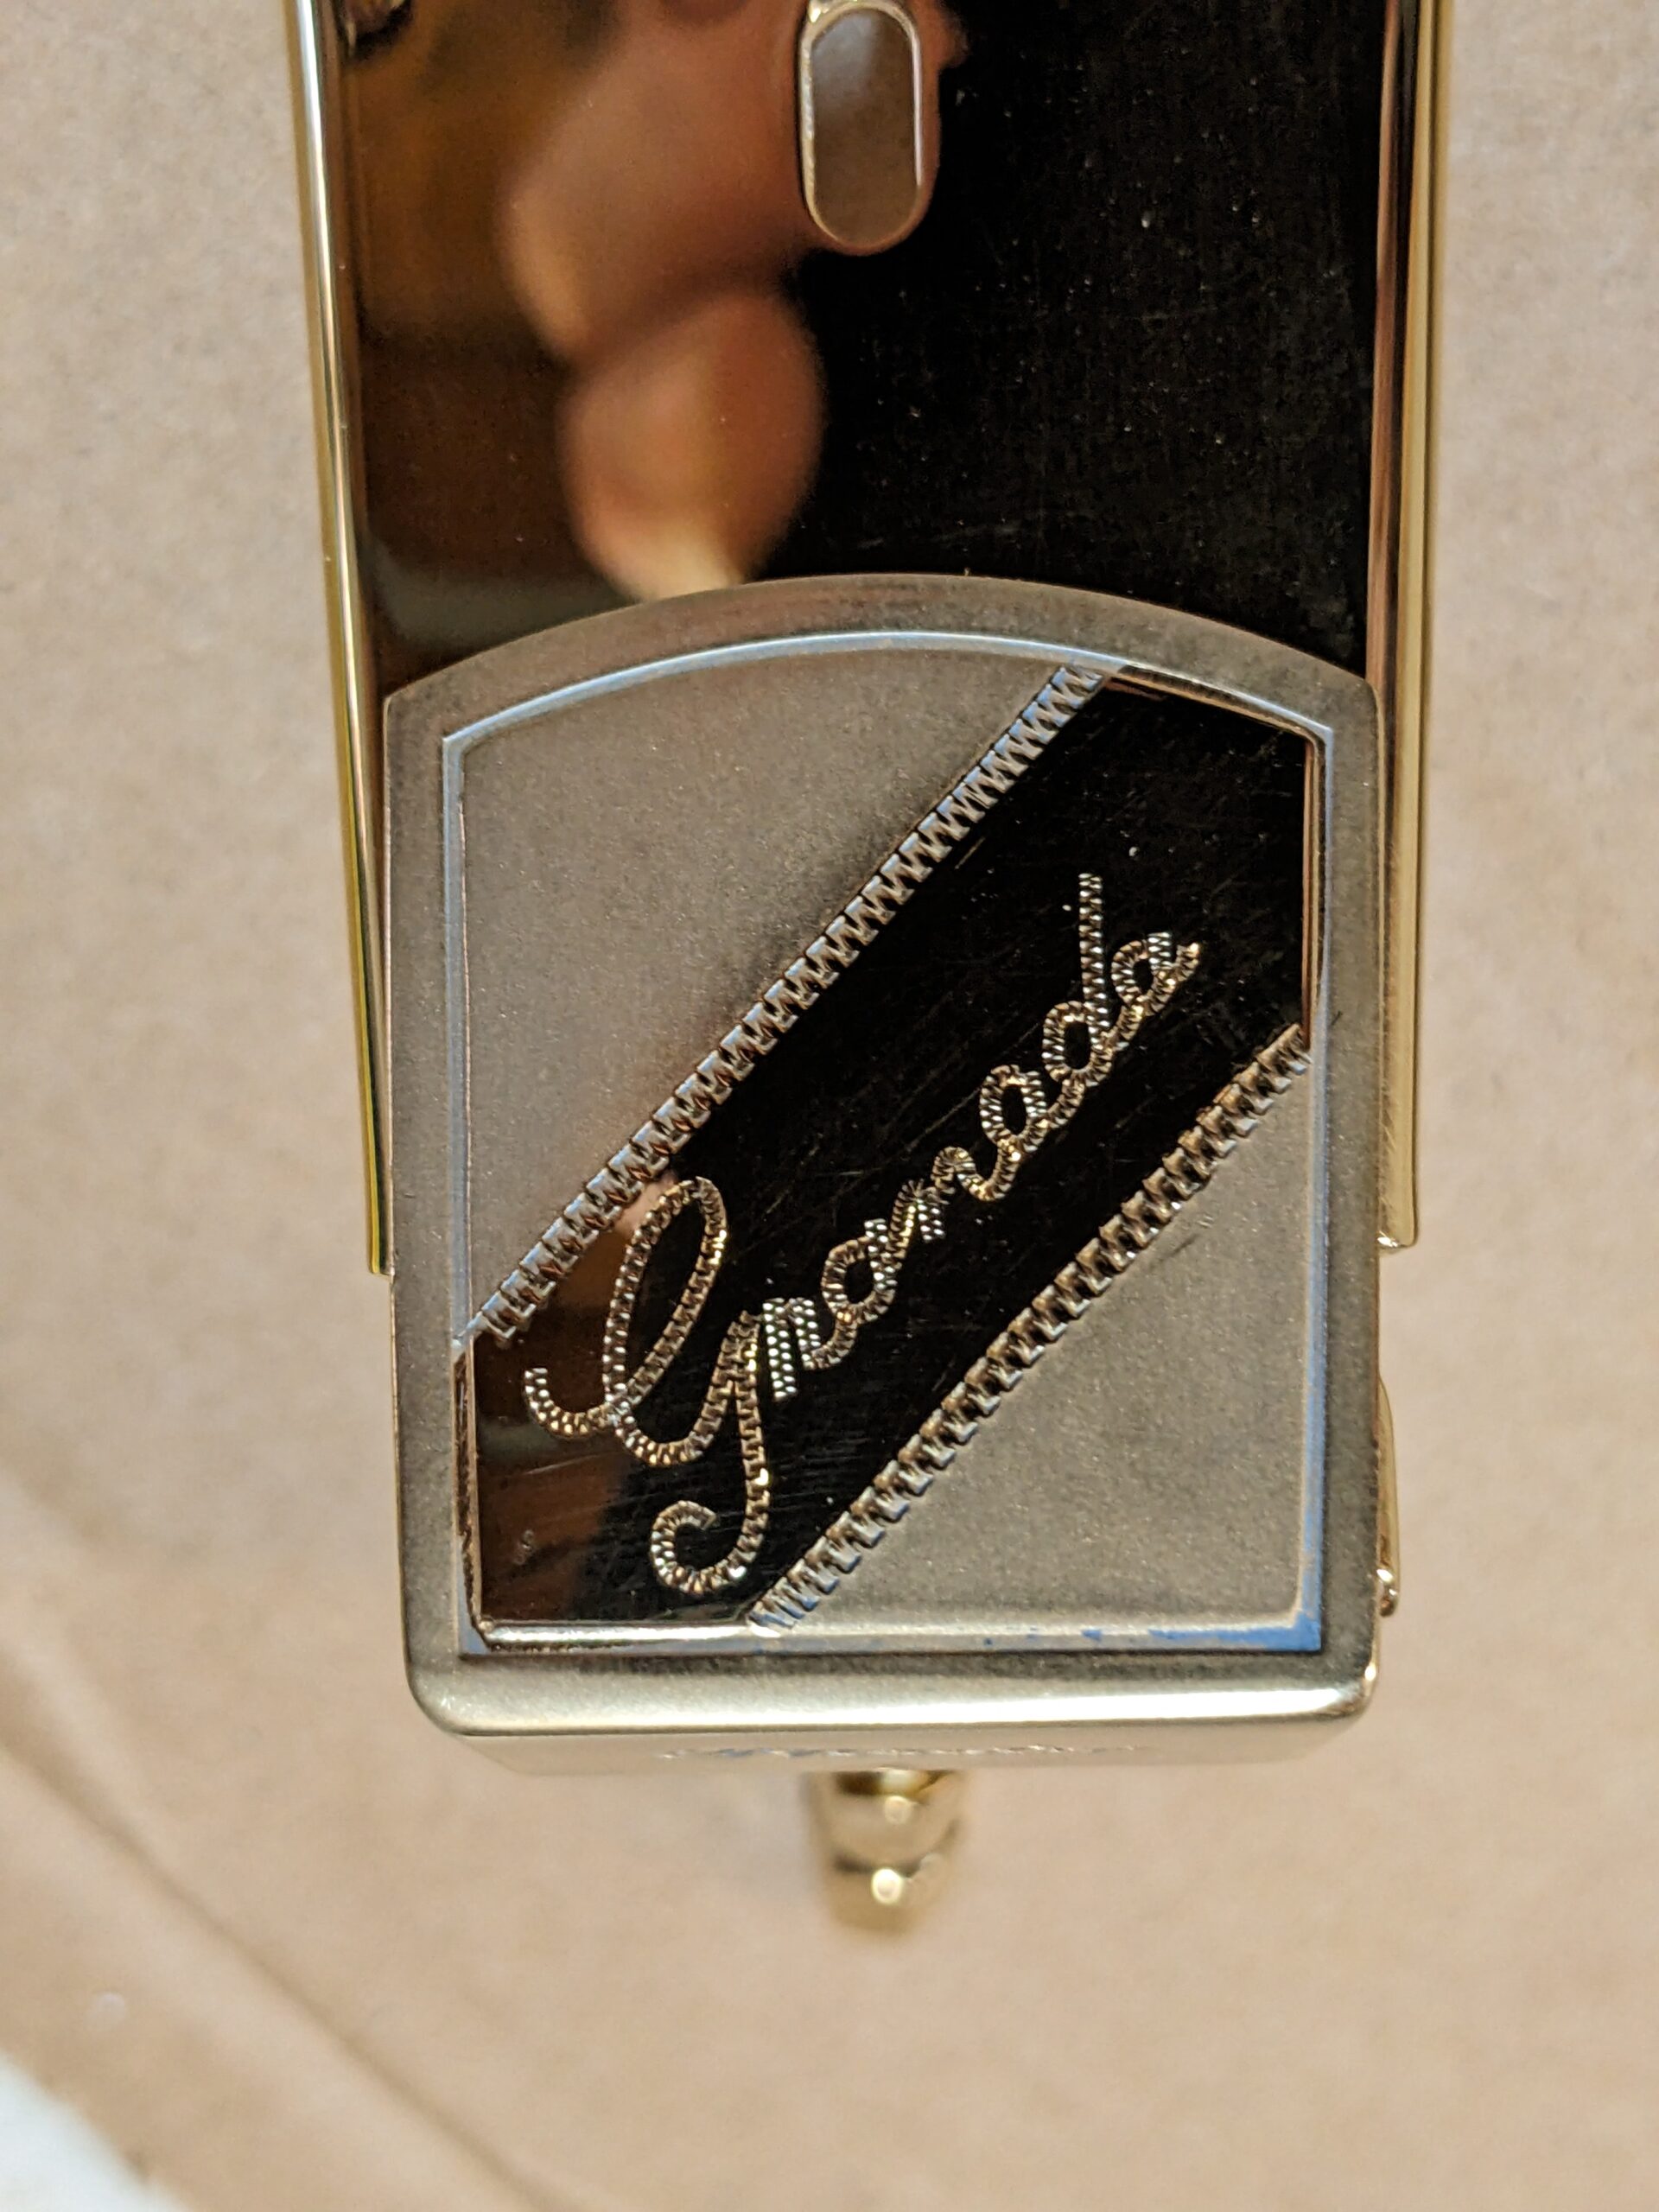 Prucha Presto Tailpiece – Granada Product